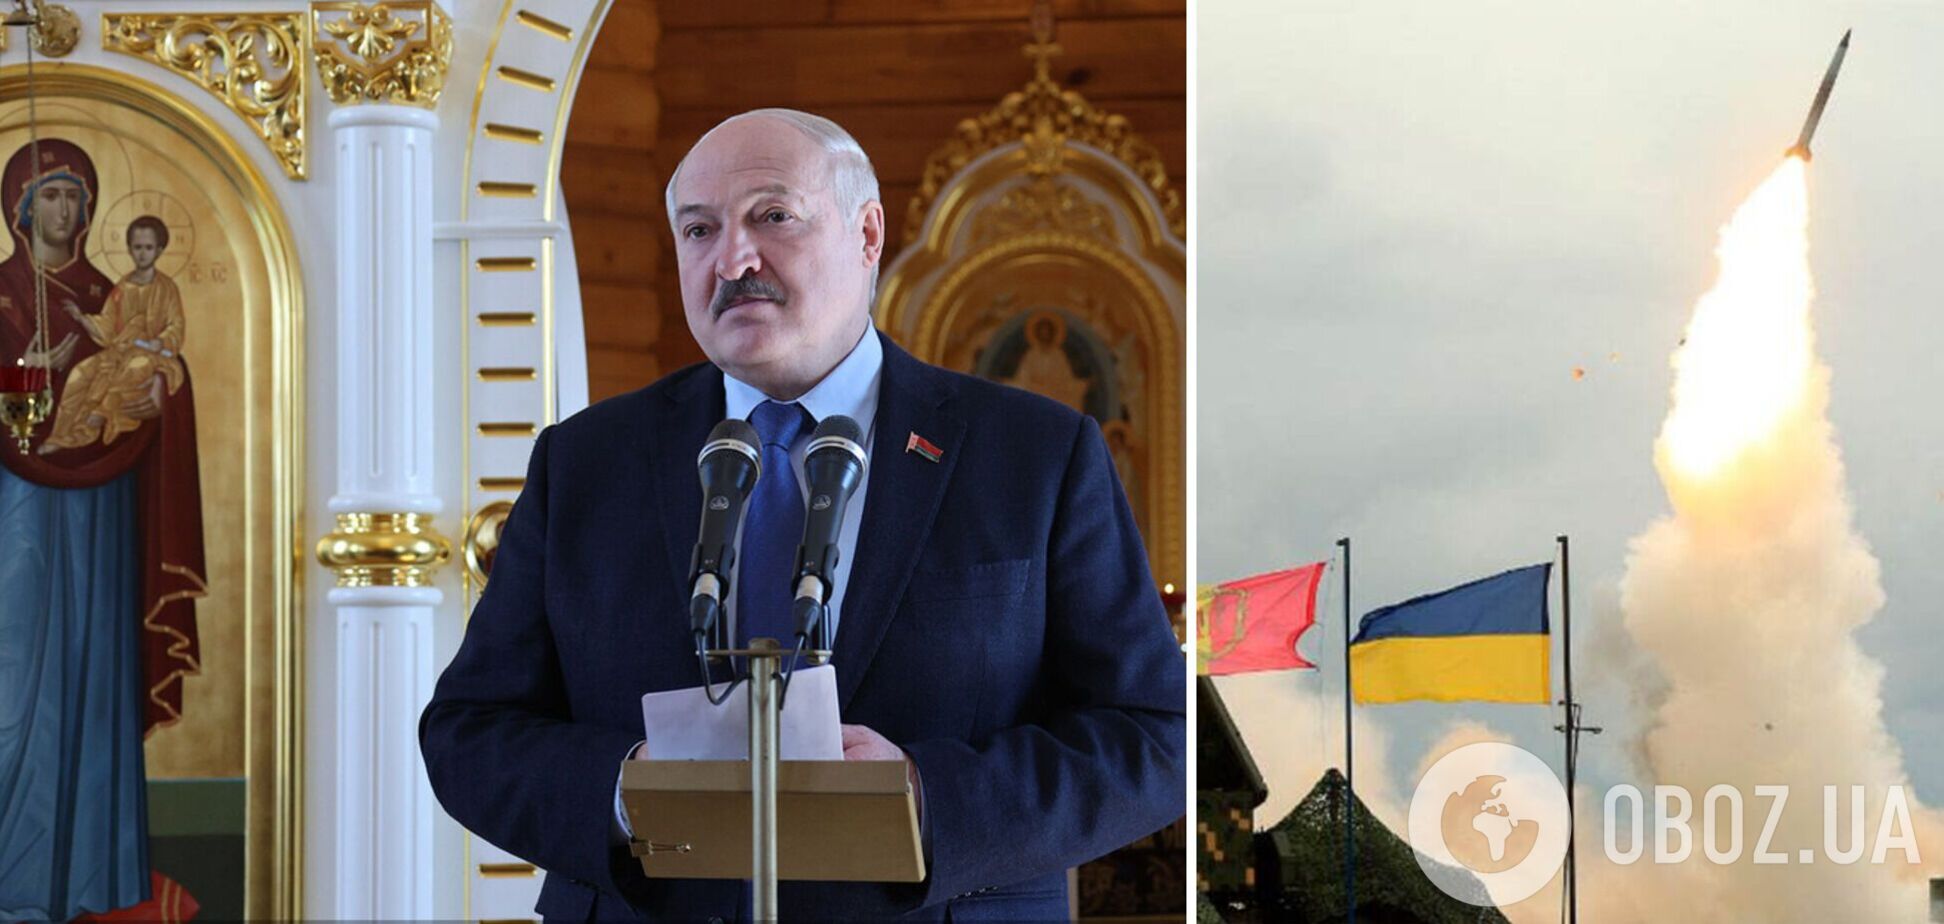 Лукашенко закликав сусідів 'жити дружно', але з території Білорусі бомбардують Україну. Відео